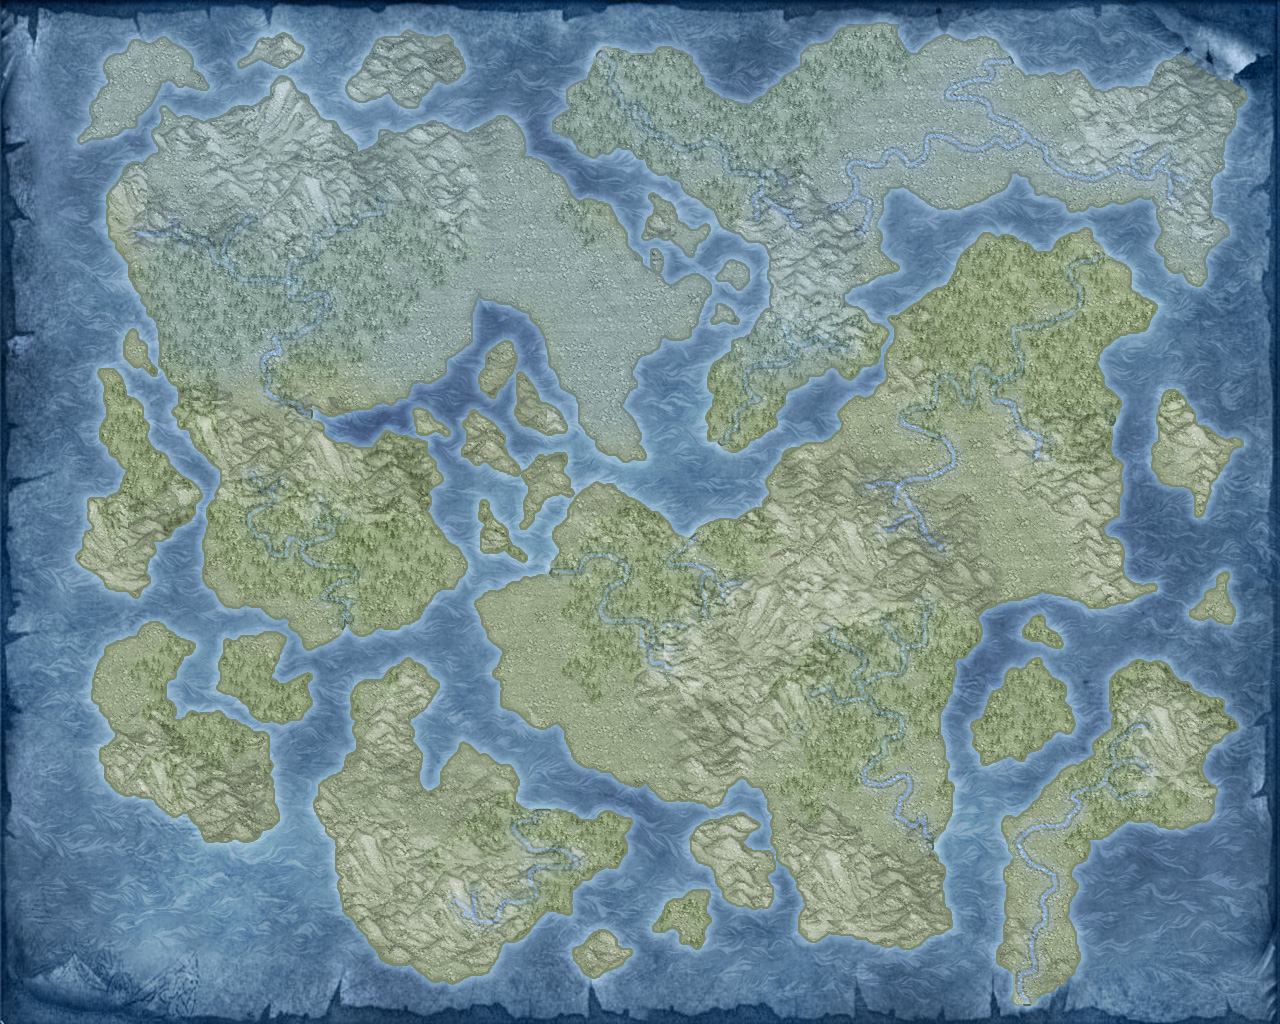 Blank World Map 1 By Thedasscholar On Deviantart